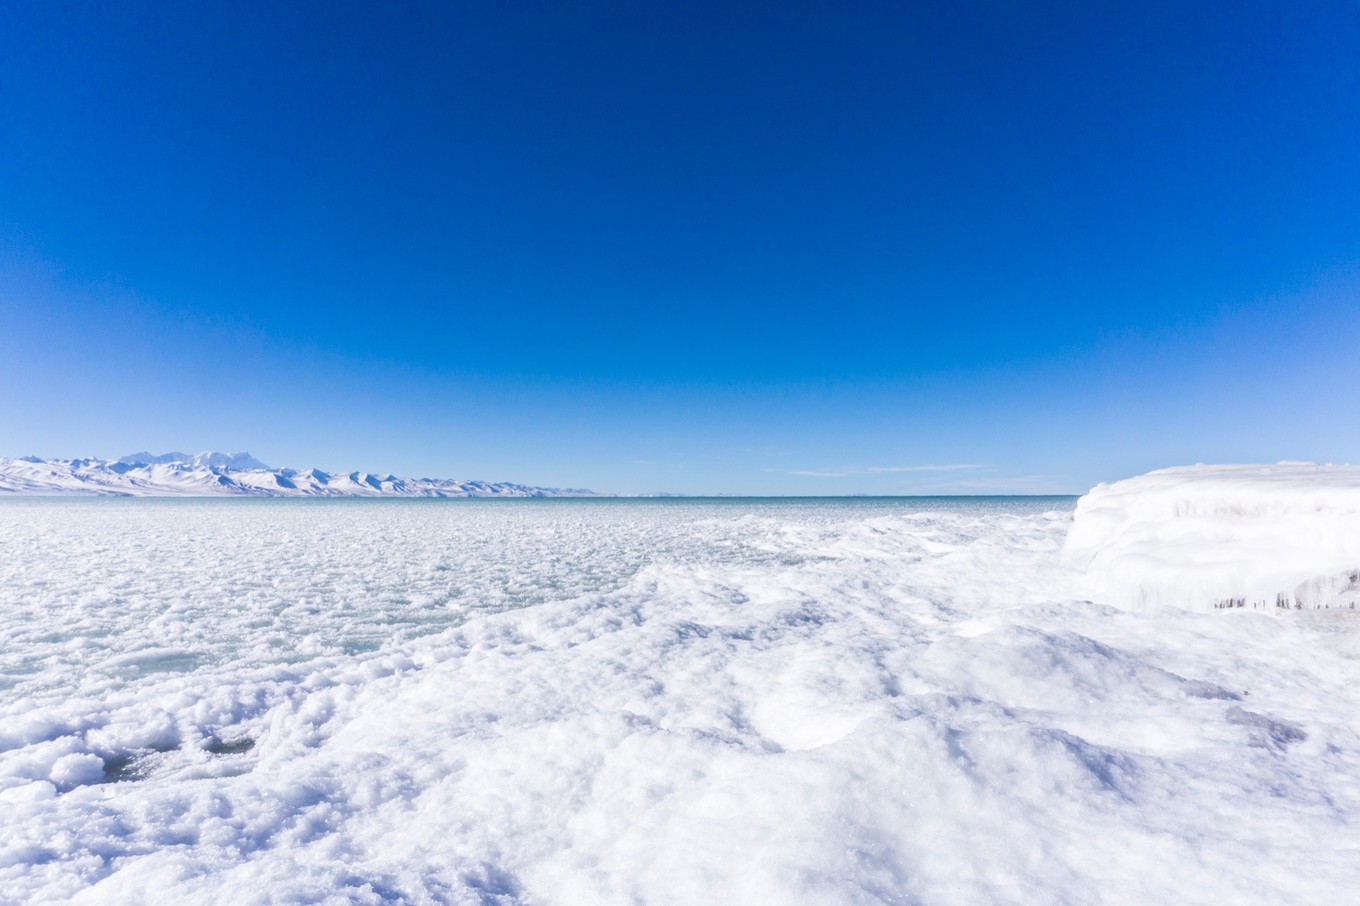 冰封的纳木措,雪域高原的美景,酷似流浪地球的画面